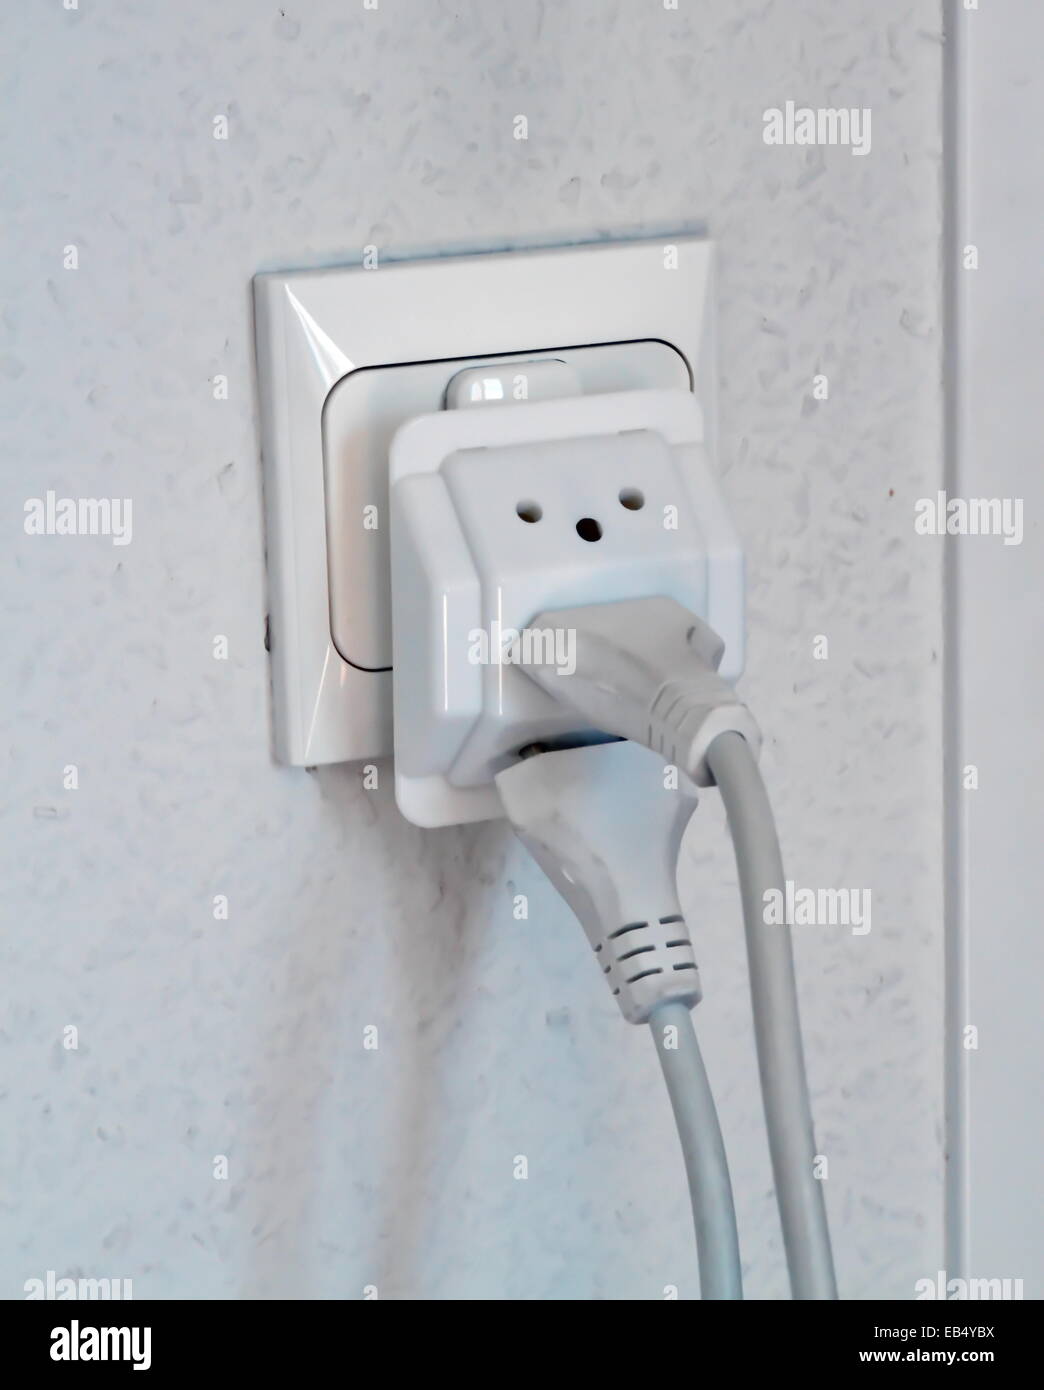 Mehrere elektrische Stecker in Wand Steckdose, Schweiz, Europa  Stockfotografie - Alamy